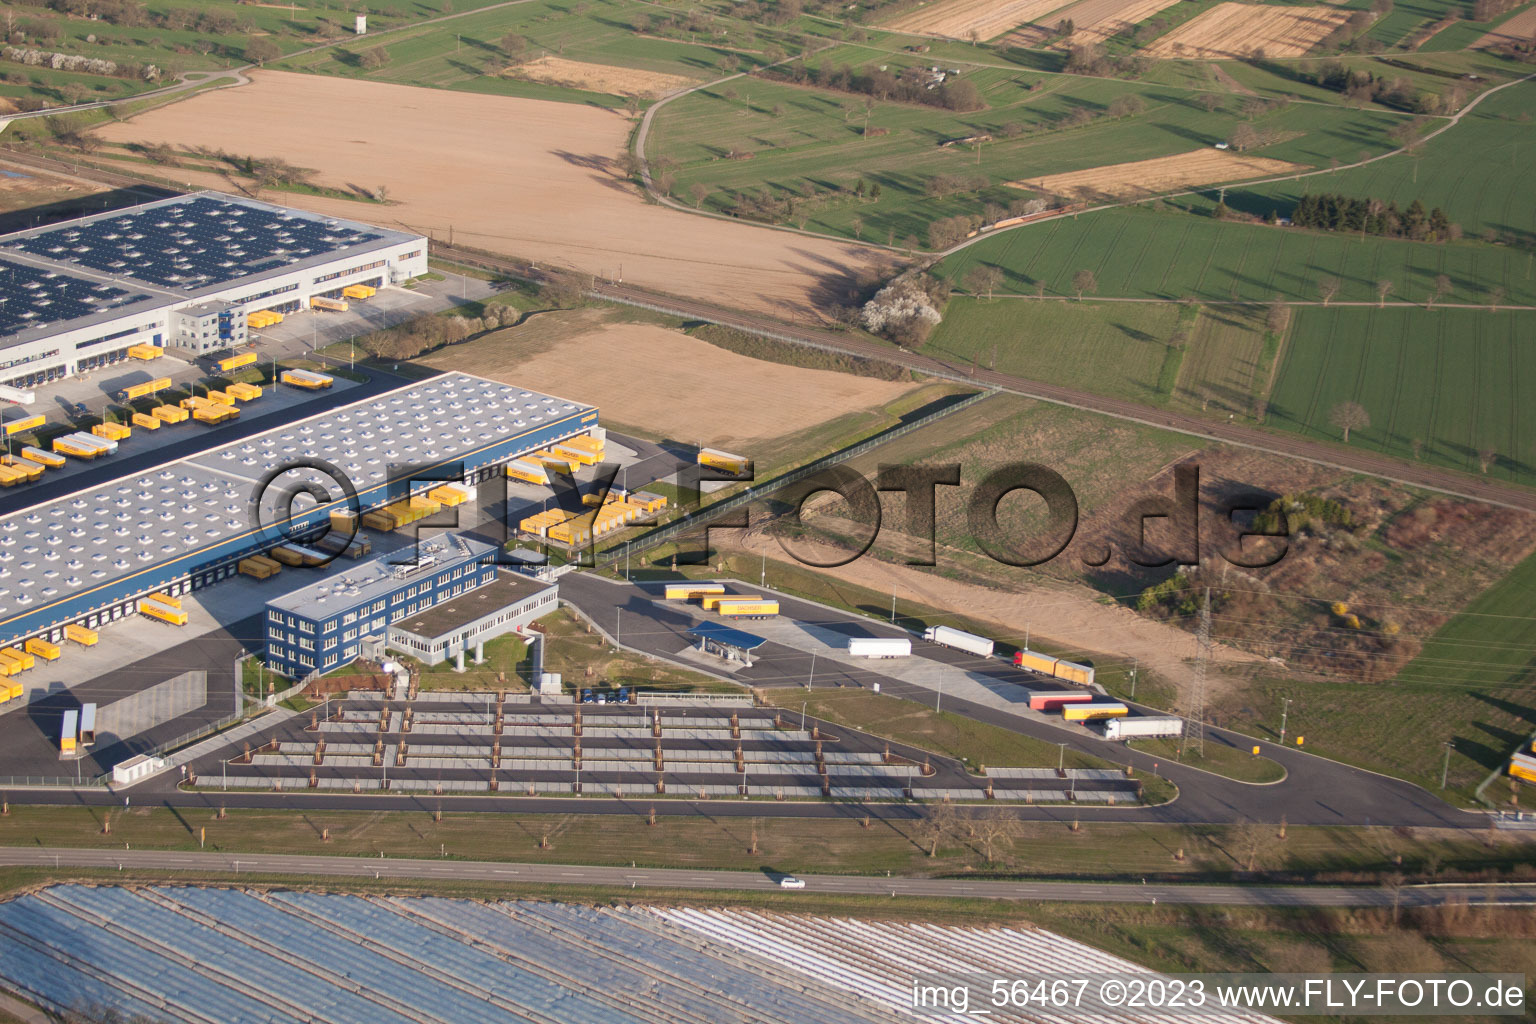 DACHSER Logistikzentrum Karlsruhe GmbH, Malsch im Bundesland Baden-Württemberg, Deutschland von oben gesehen